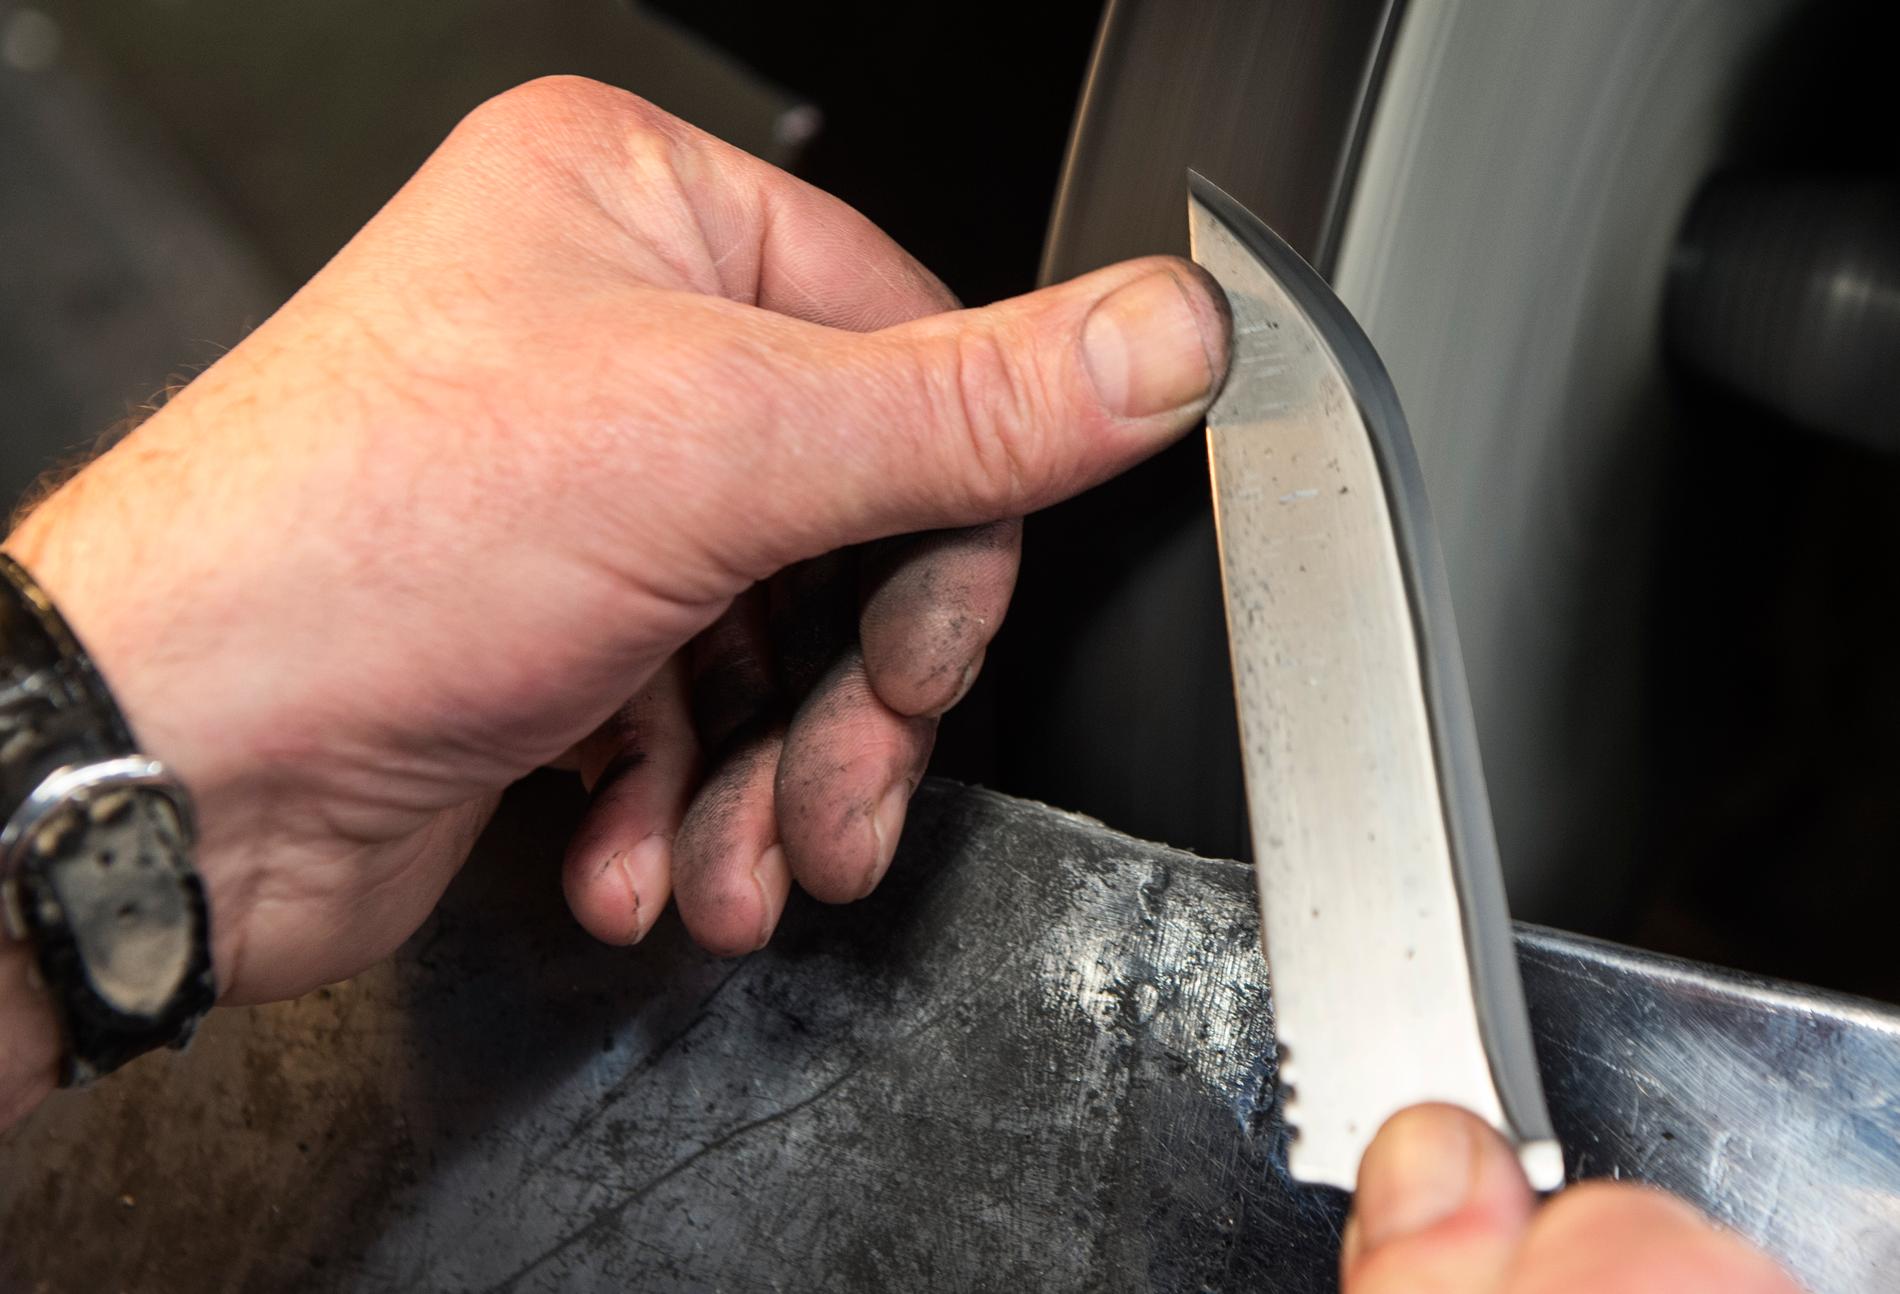 FRÅ STÅL TIL KNIV: Ei stødig hand er nødvendig når stålet skal slipast til ein kniv som bit. Jan Kåre Ravnøy i aksjon.